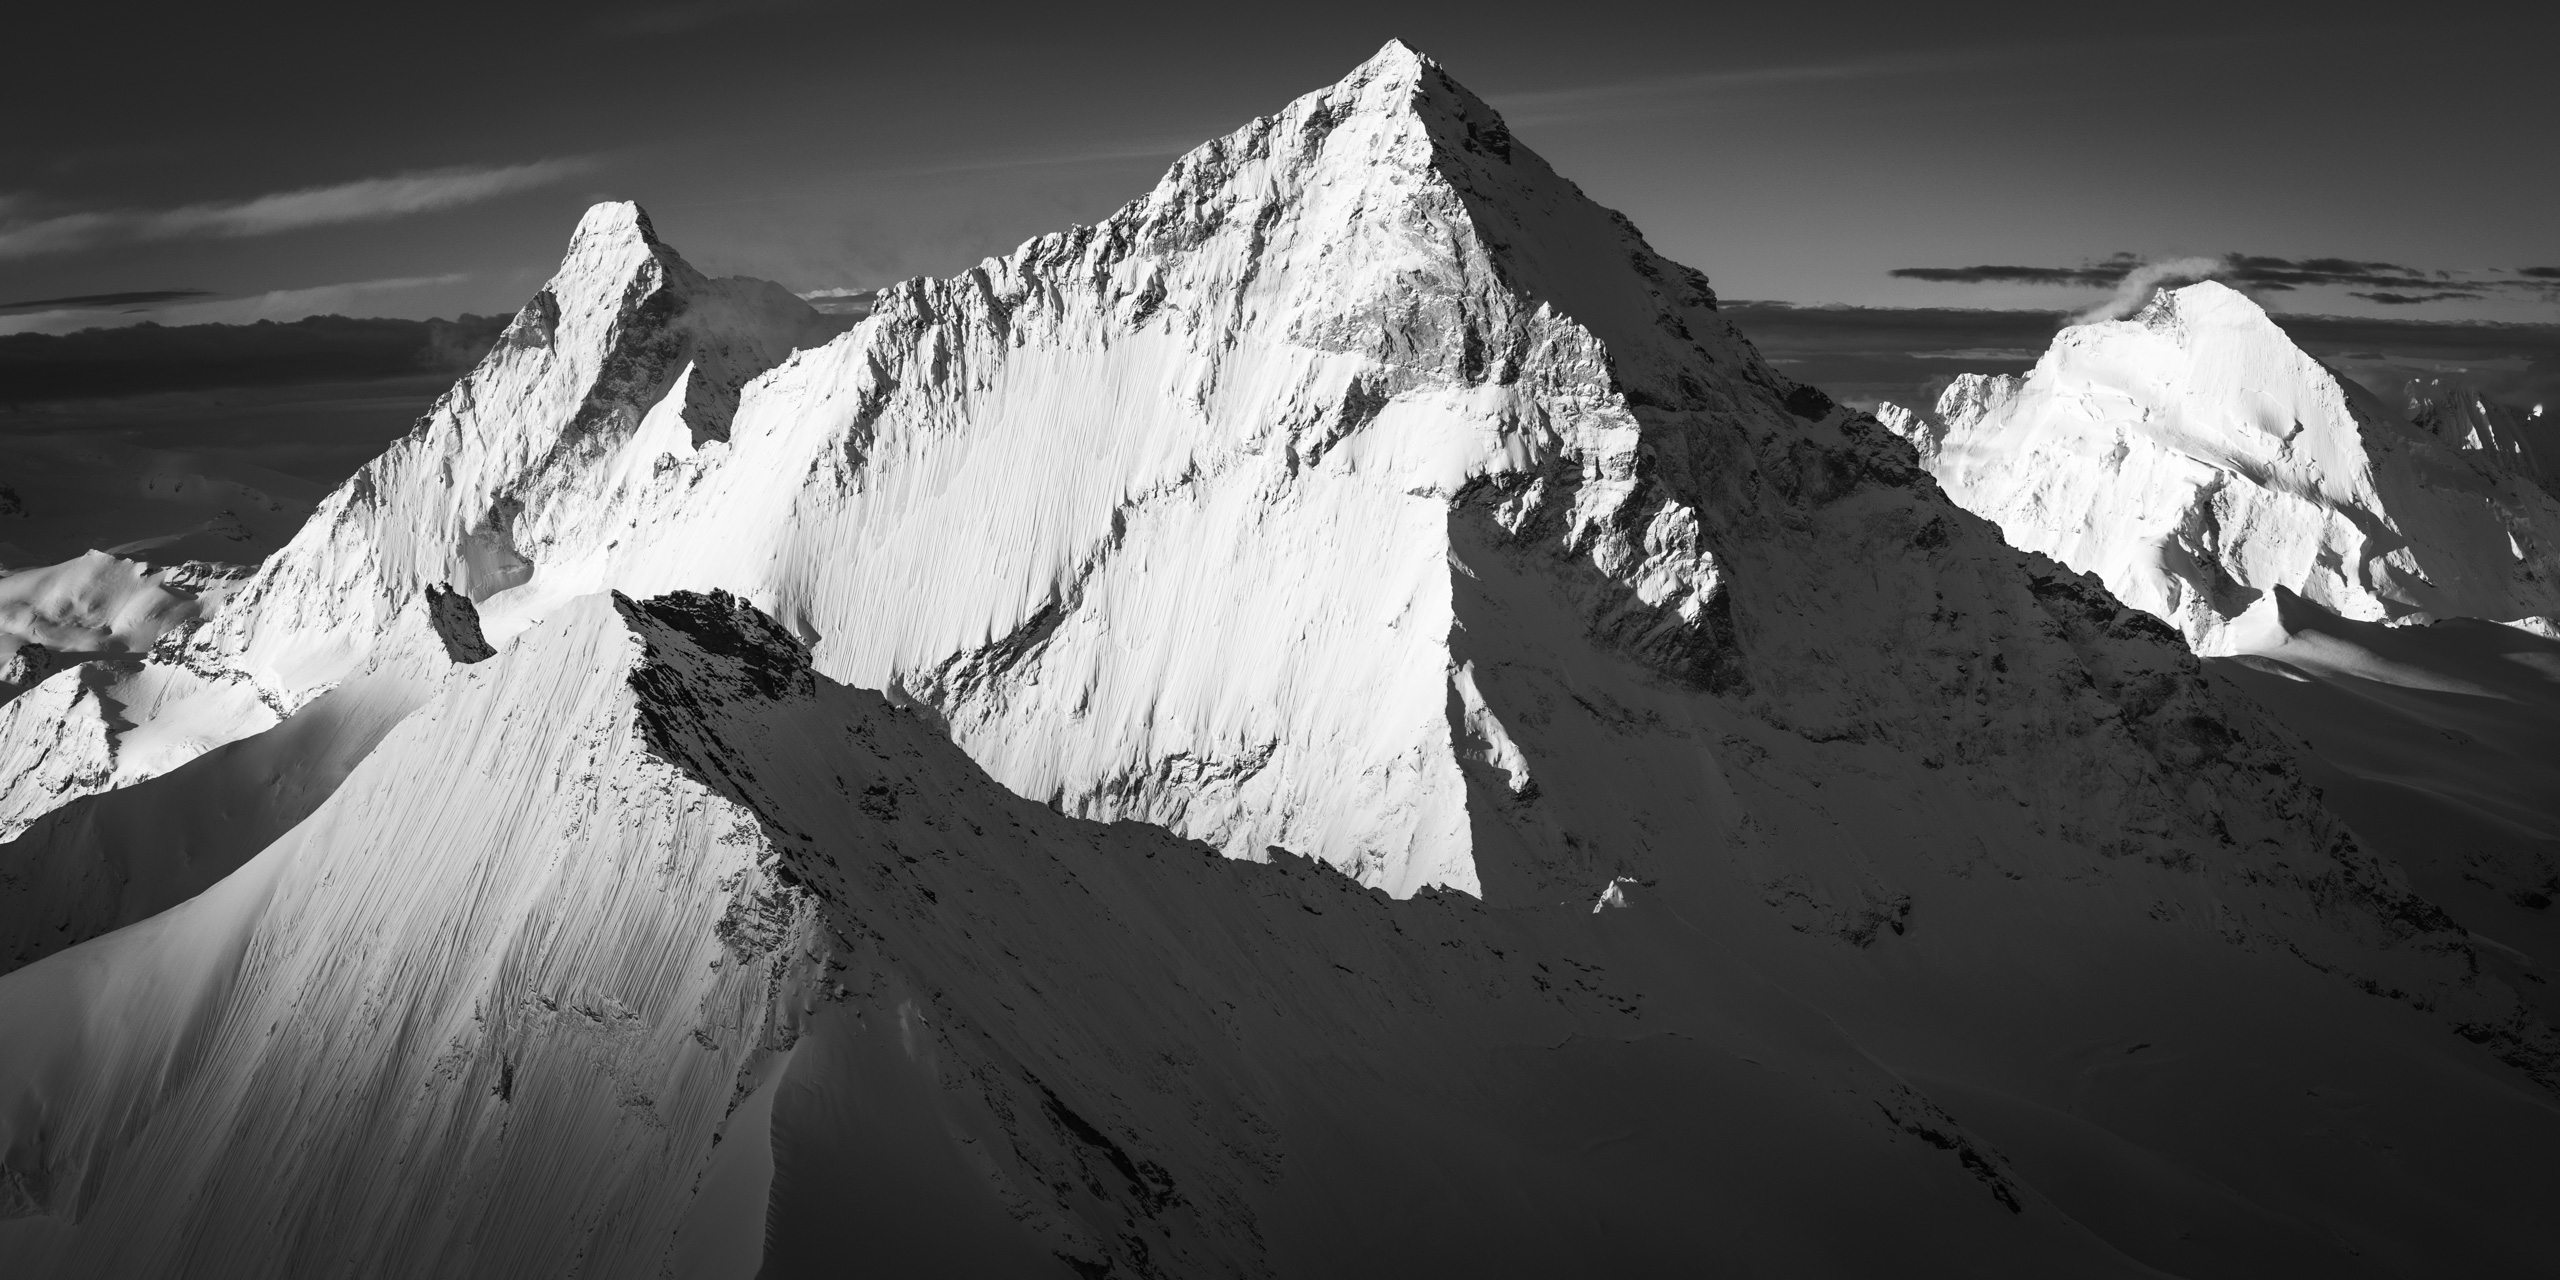 Professionelle Bildeinrahmung von The Matterhorn und The Dent Blanche in den Alpen in schwarz-weiss